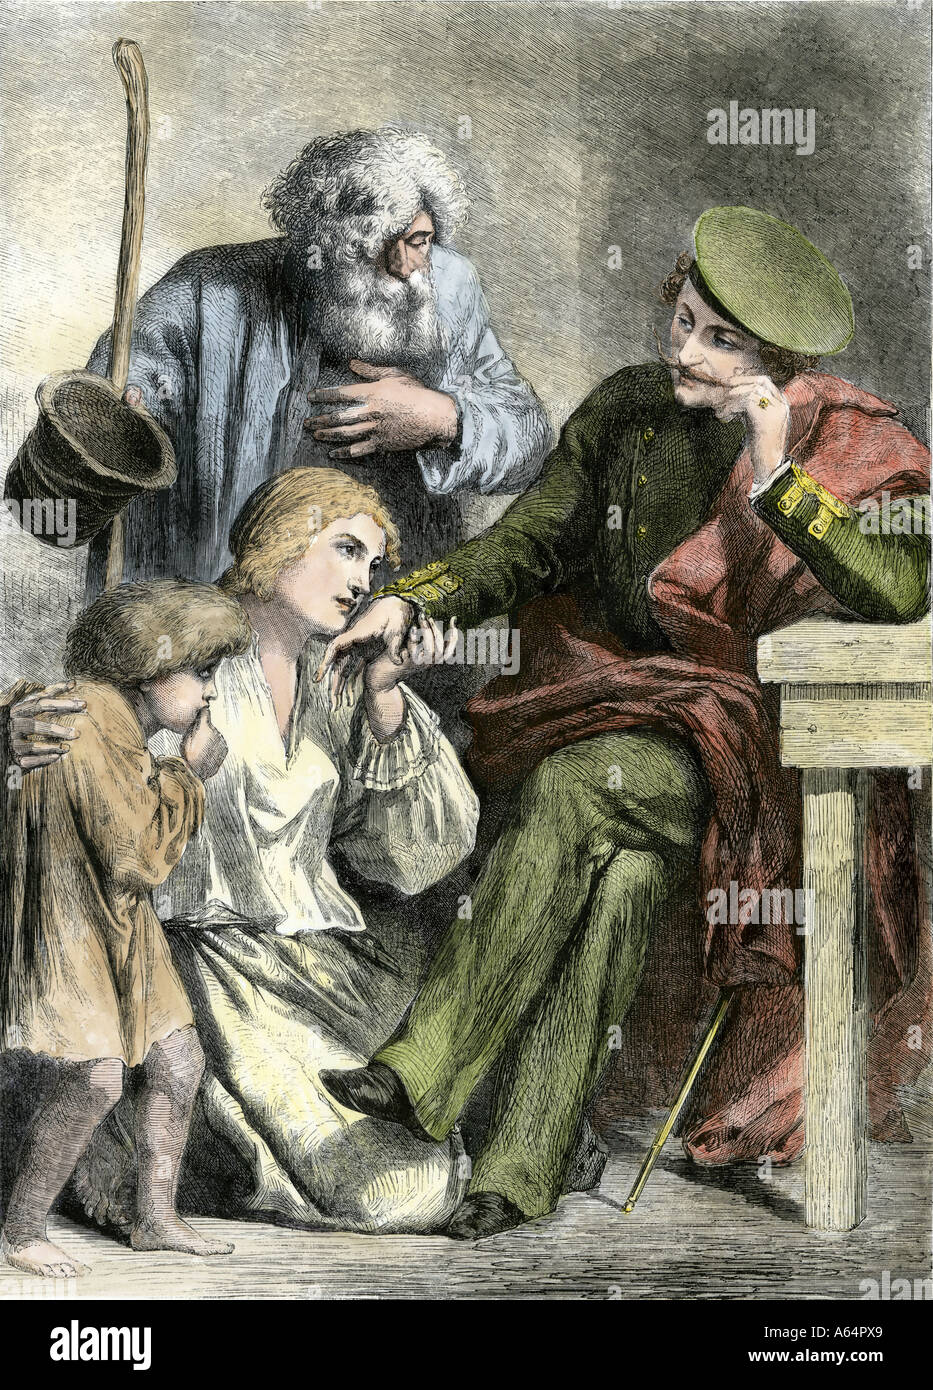 Famille des serfs russes saluant un propriétaire noble des années 1800. À la main, gravure sur bois Banque D'Images